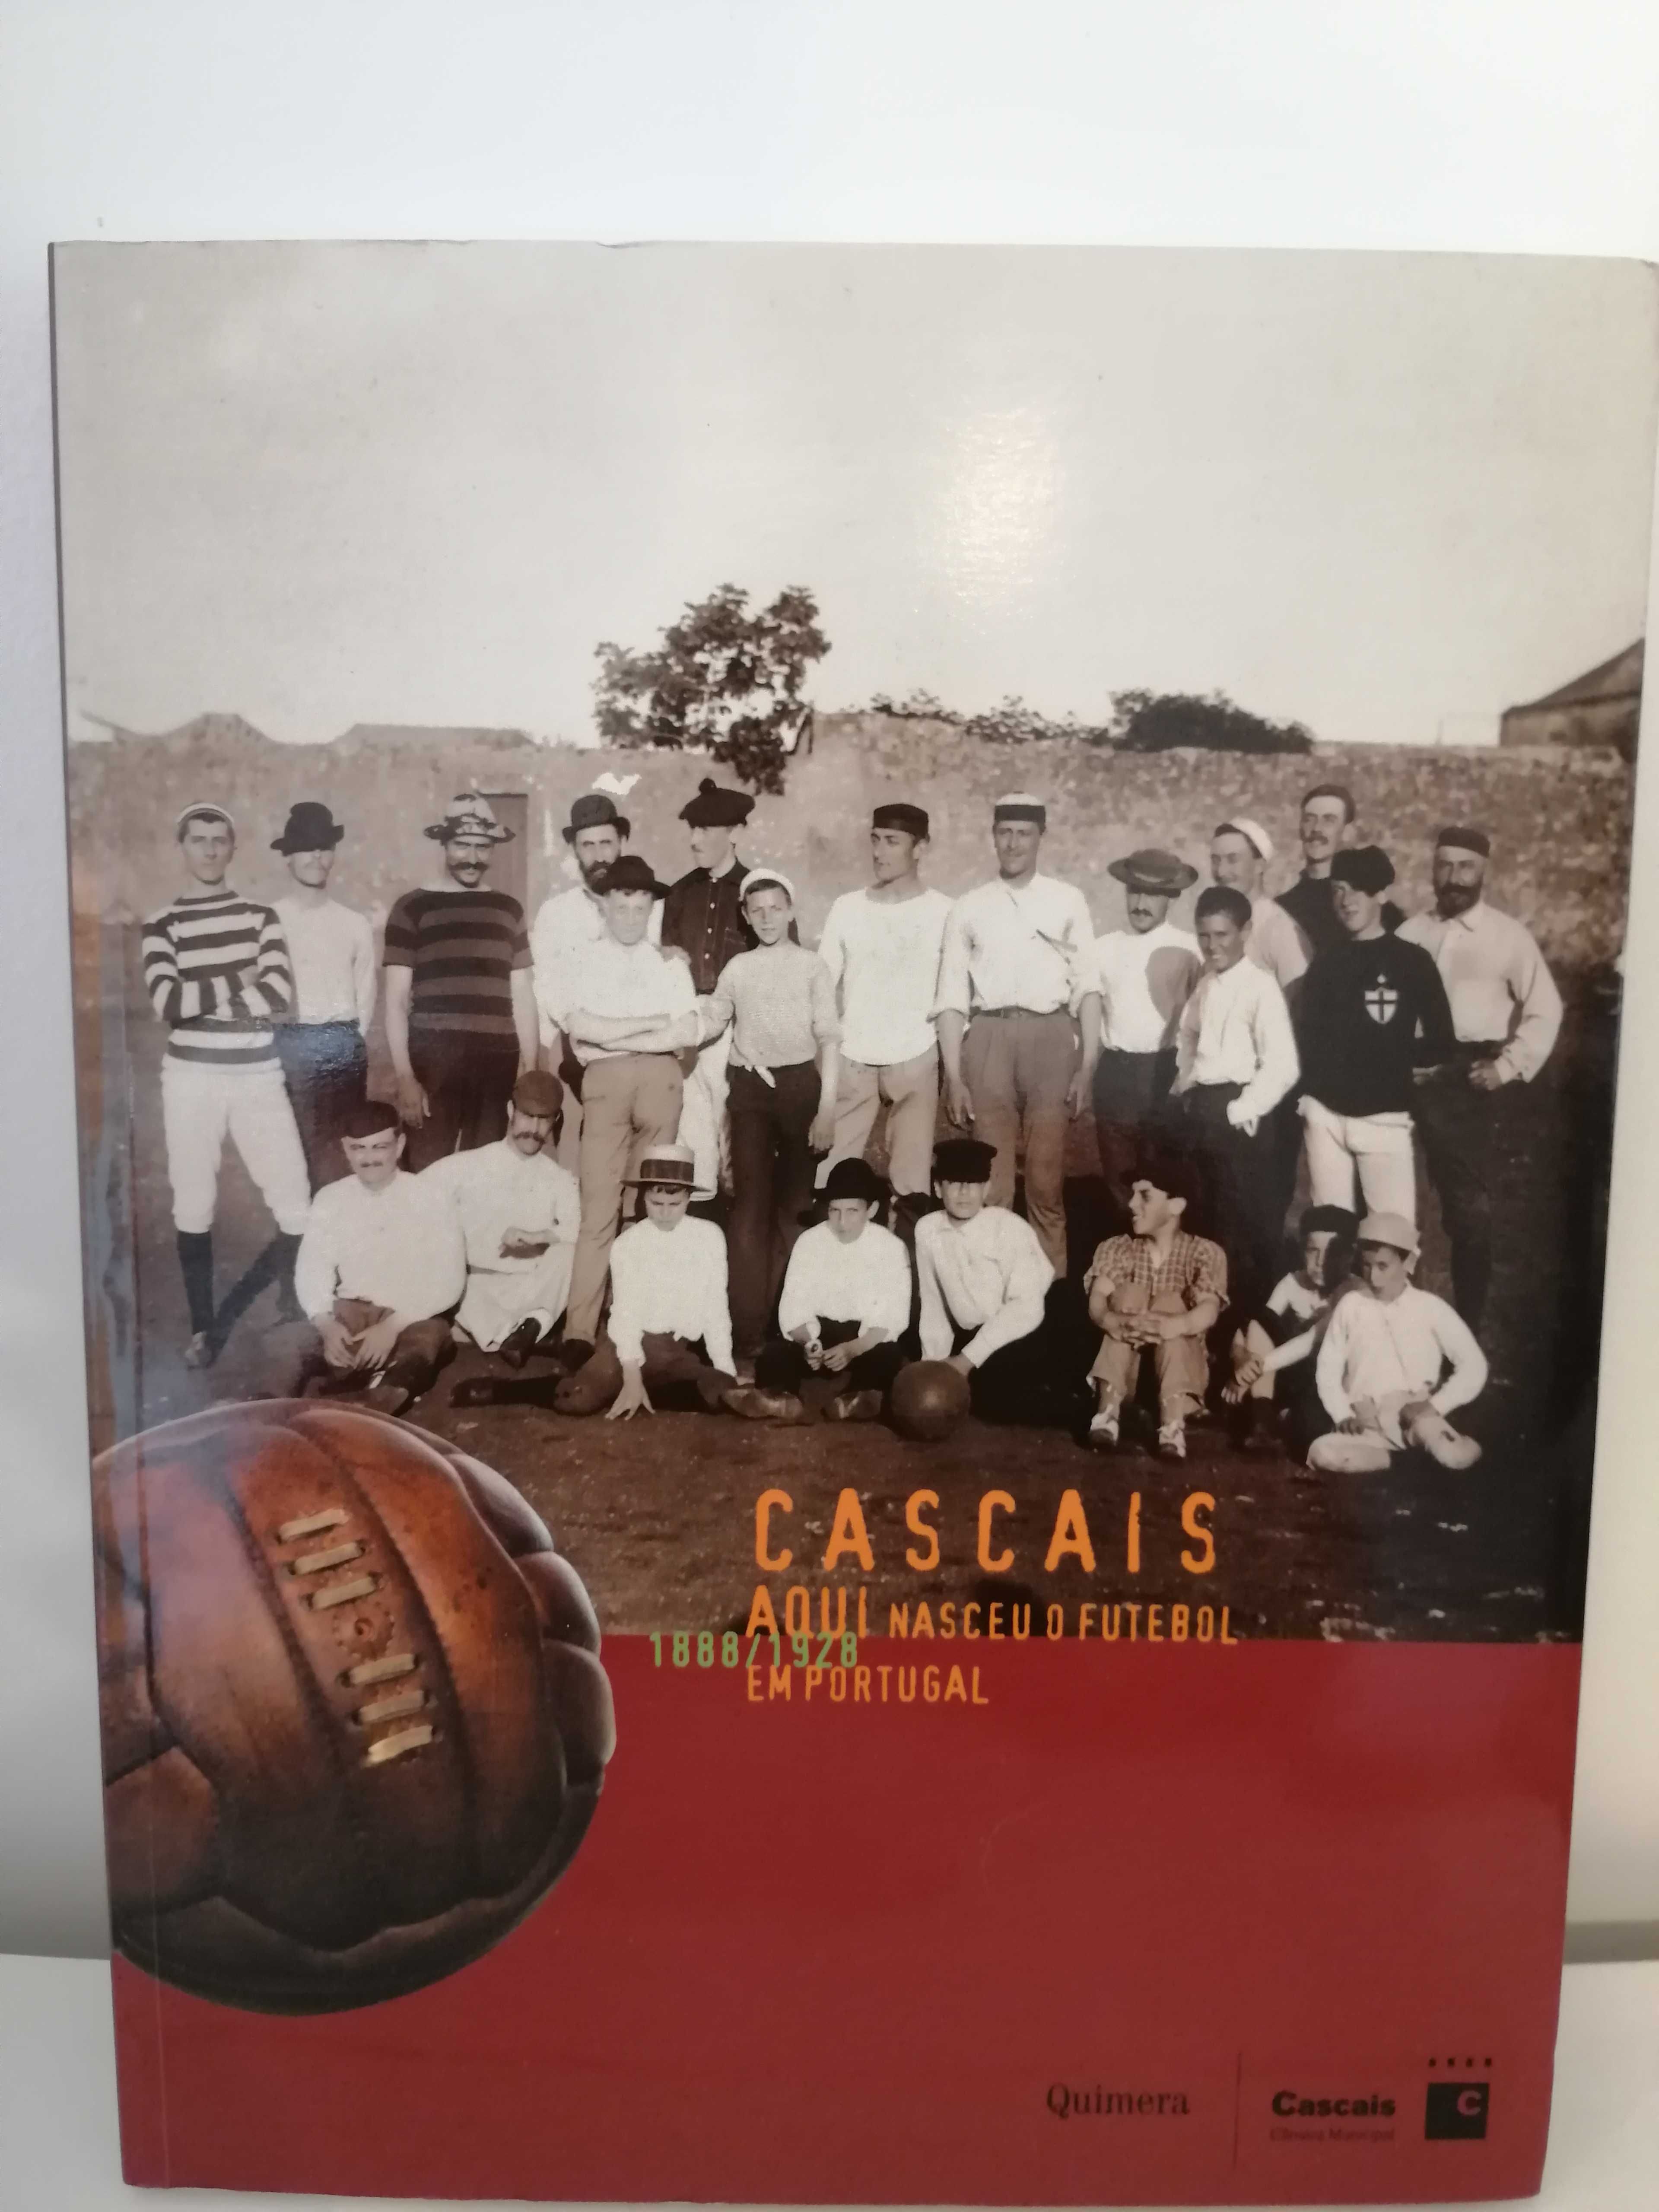 Cascais aqui nasceu o futebol em Portugal ( 1888 a 1928)